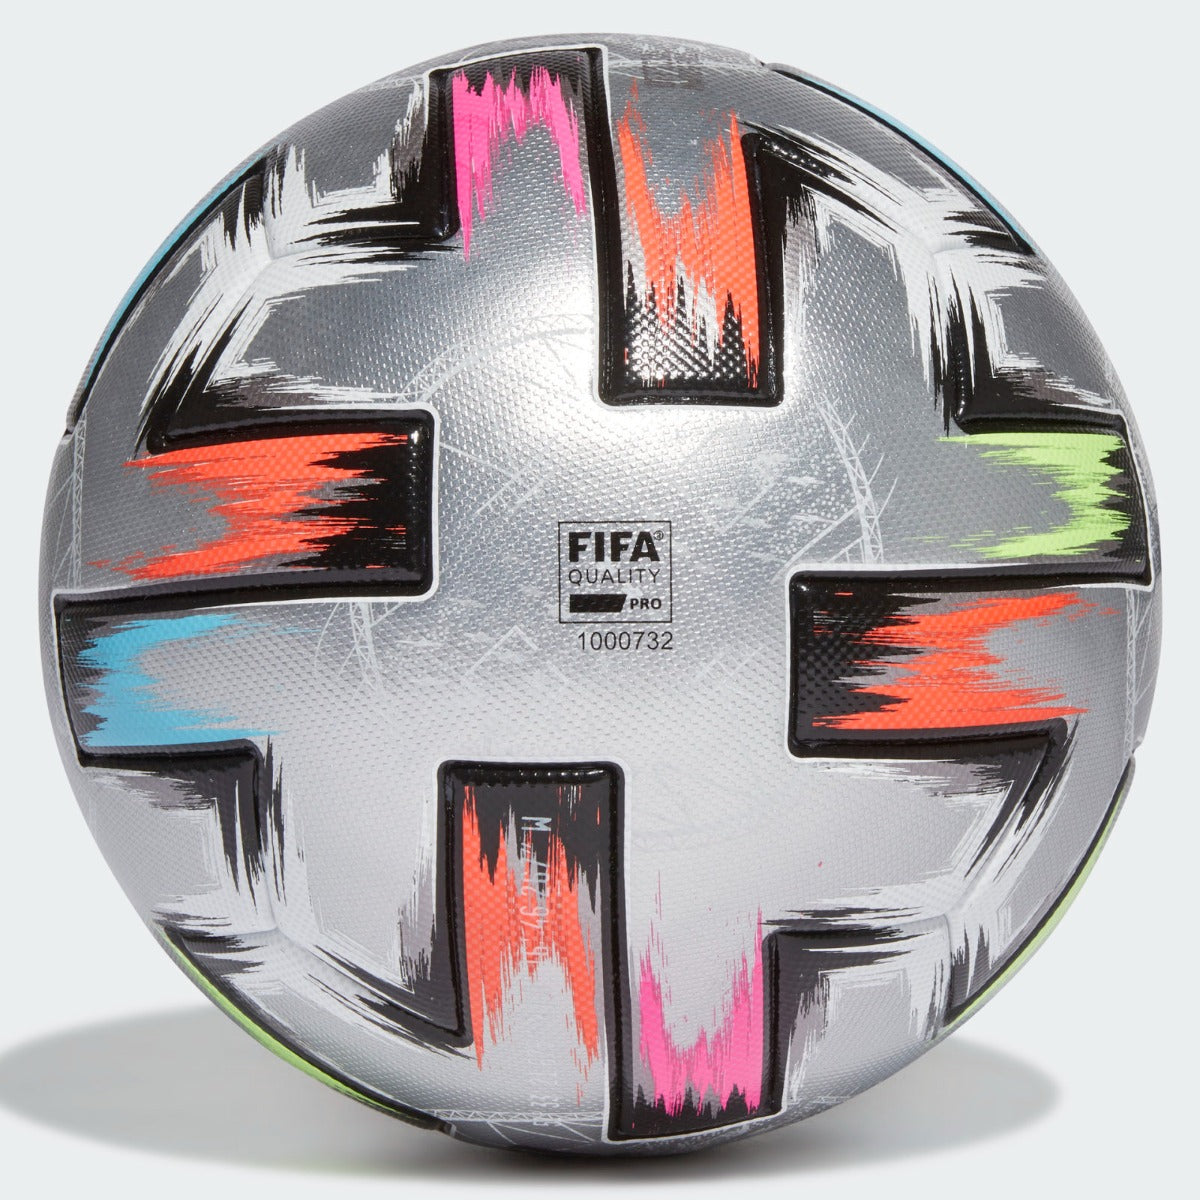 Adidas Uniforia Finale Pro Soccer Ball - Silver-Black (Back)